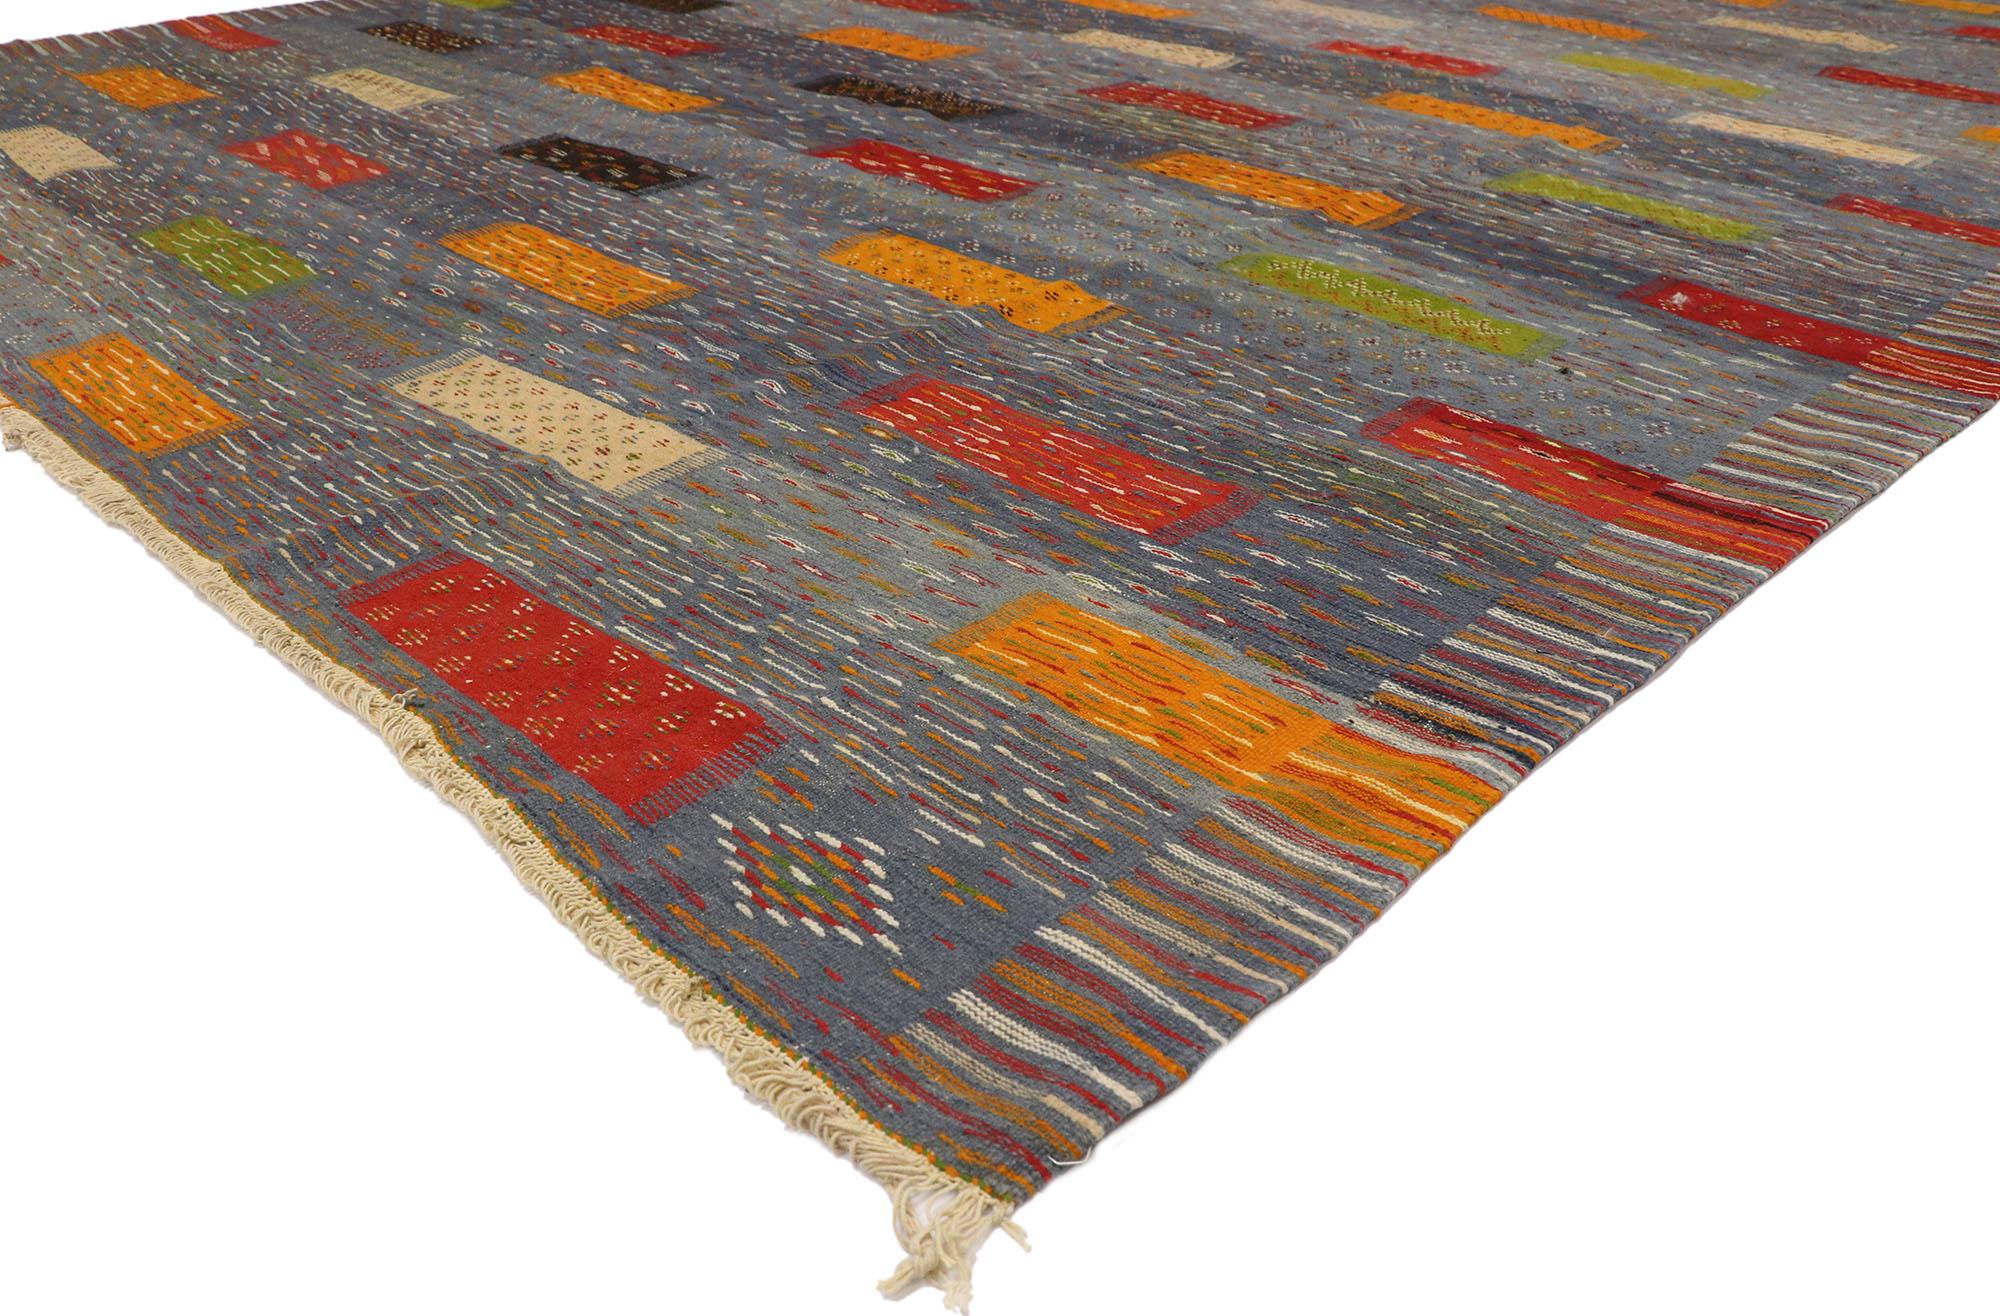 20911, nouveau tapis contemporain berbère marocain Kilim, tapis moderne style cabane à tissage plat 09'10 x 13'06. Avec son design expressif audacieux, ses détails et sa texture incroyables, ce tapis berbère marocain Kilim contemporain est une